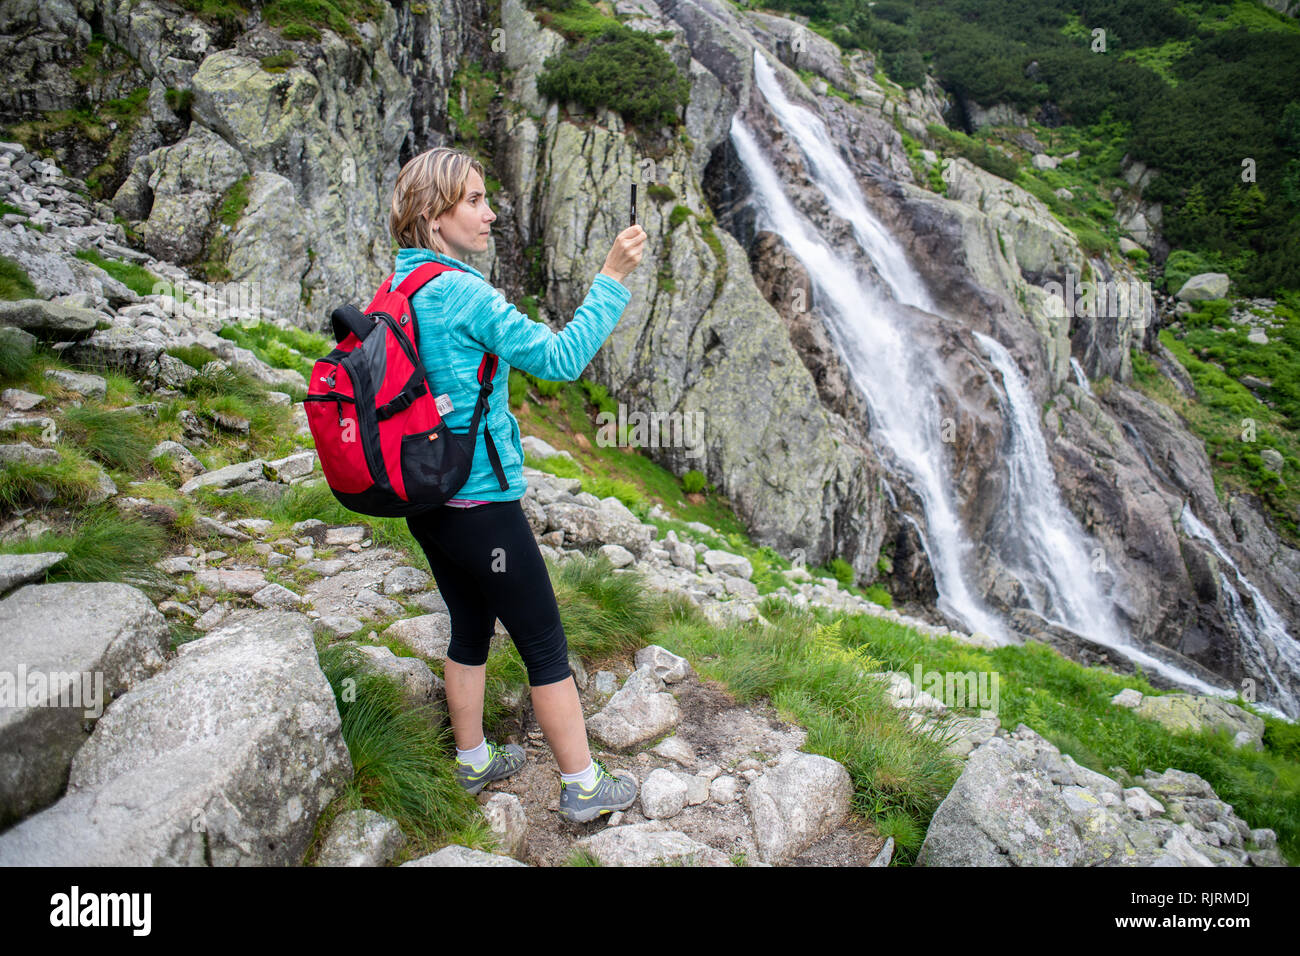 Une femme prend une photo avec son téléphone de Wielka Siklawa la plus haute cascade en Pologne dans le Parc National des Tatras,lesser Poland Voivodeship, Polan Banque D'Images